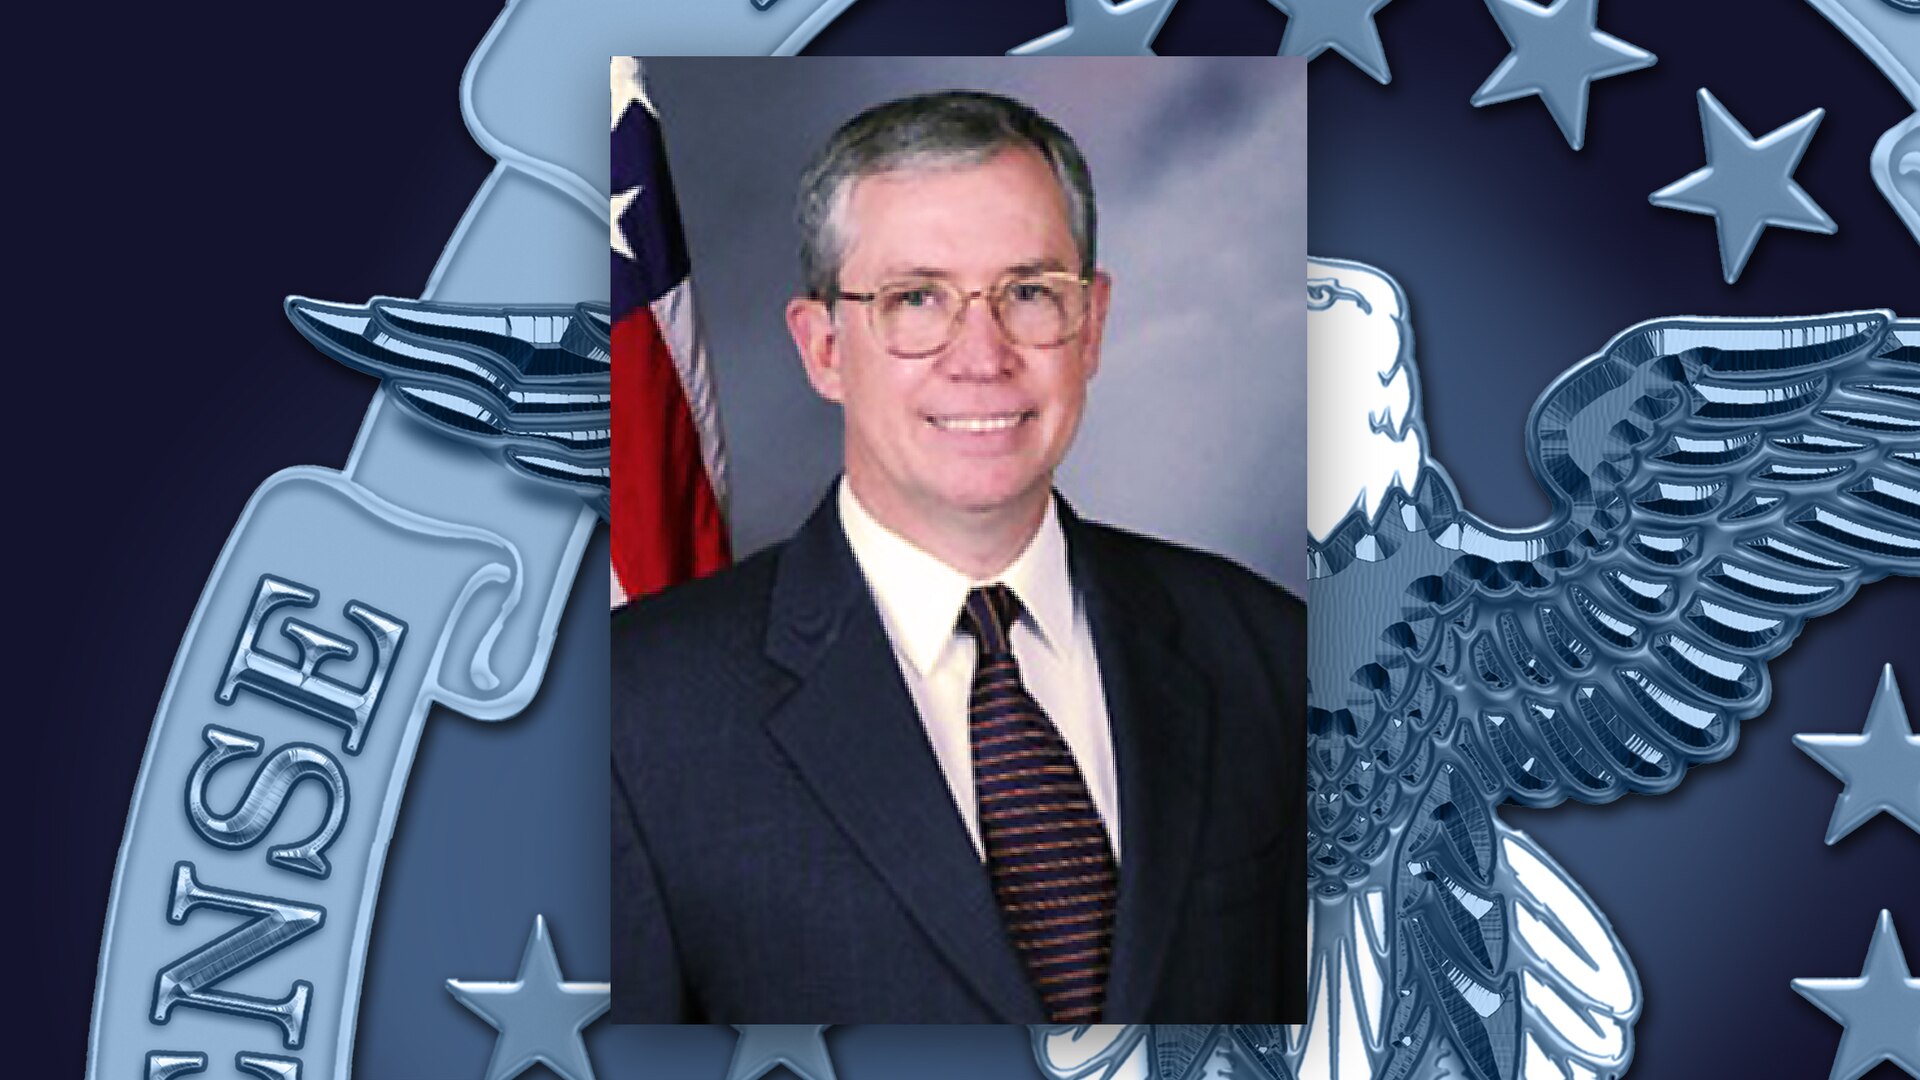 A portrait of David Falvey on a DLA emblem background